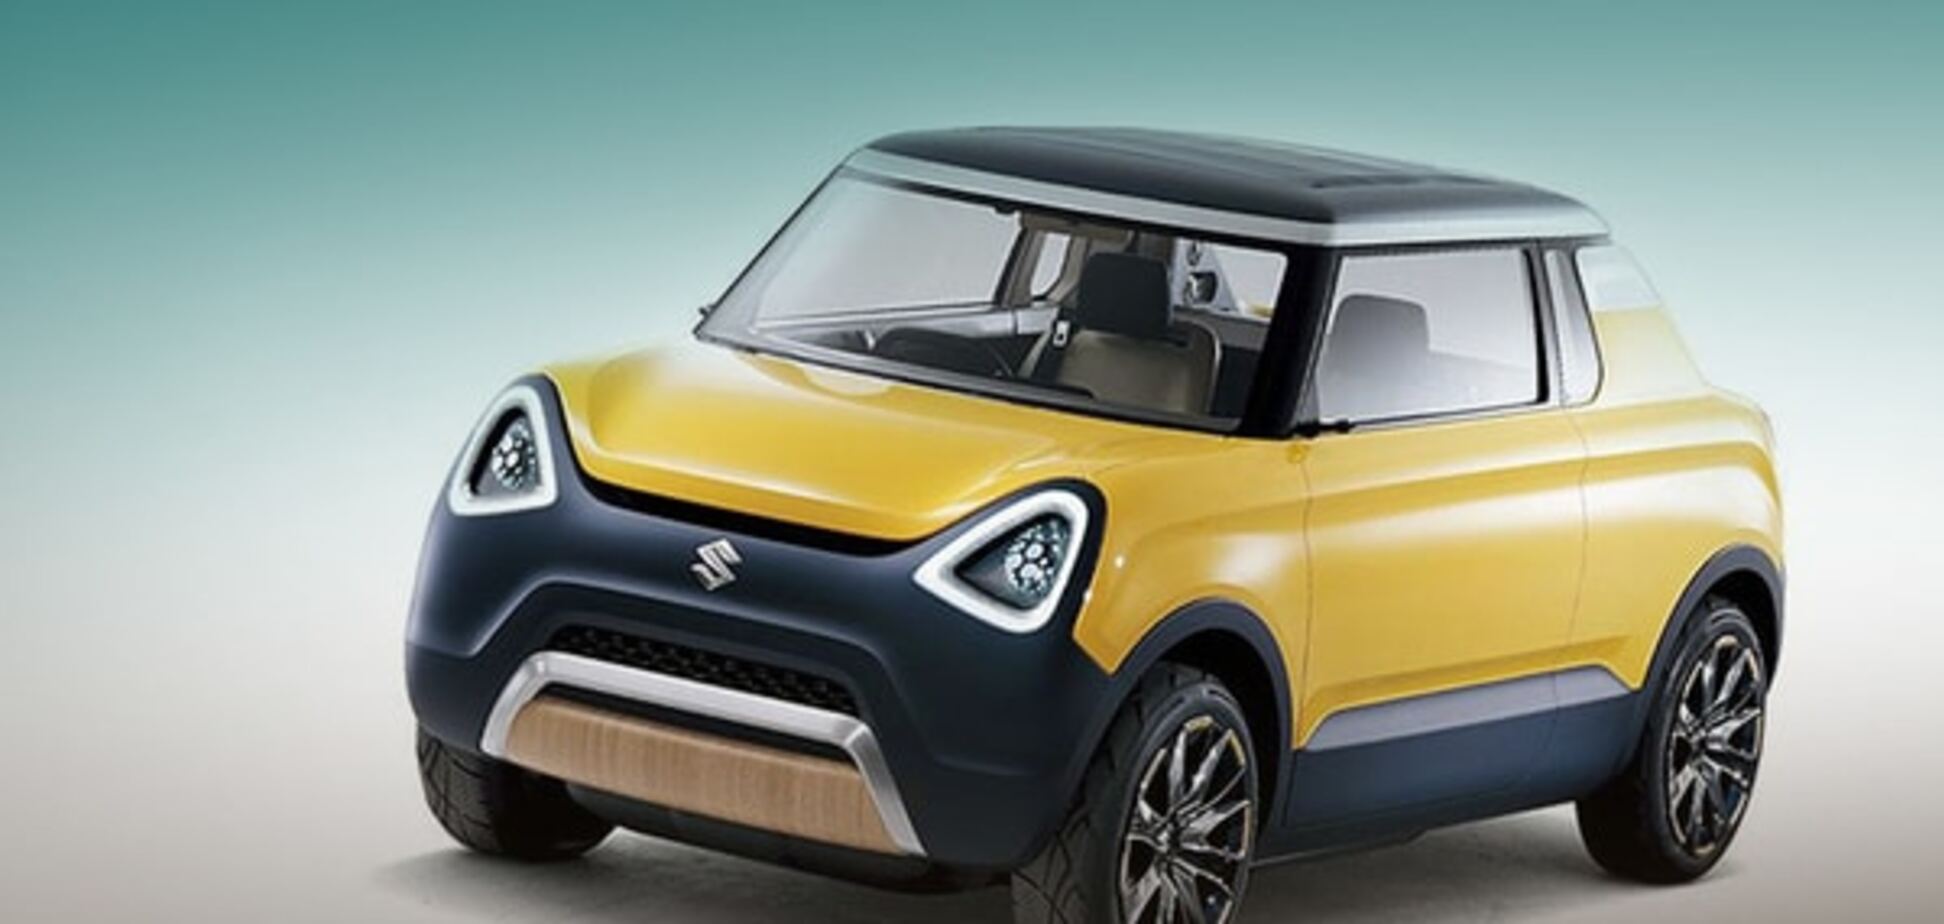 Suzuki представила концепты новых кей-кара и маленького минивэна